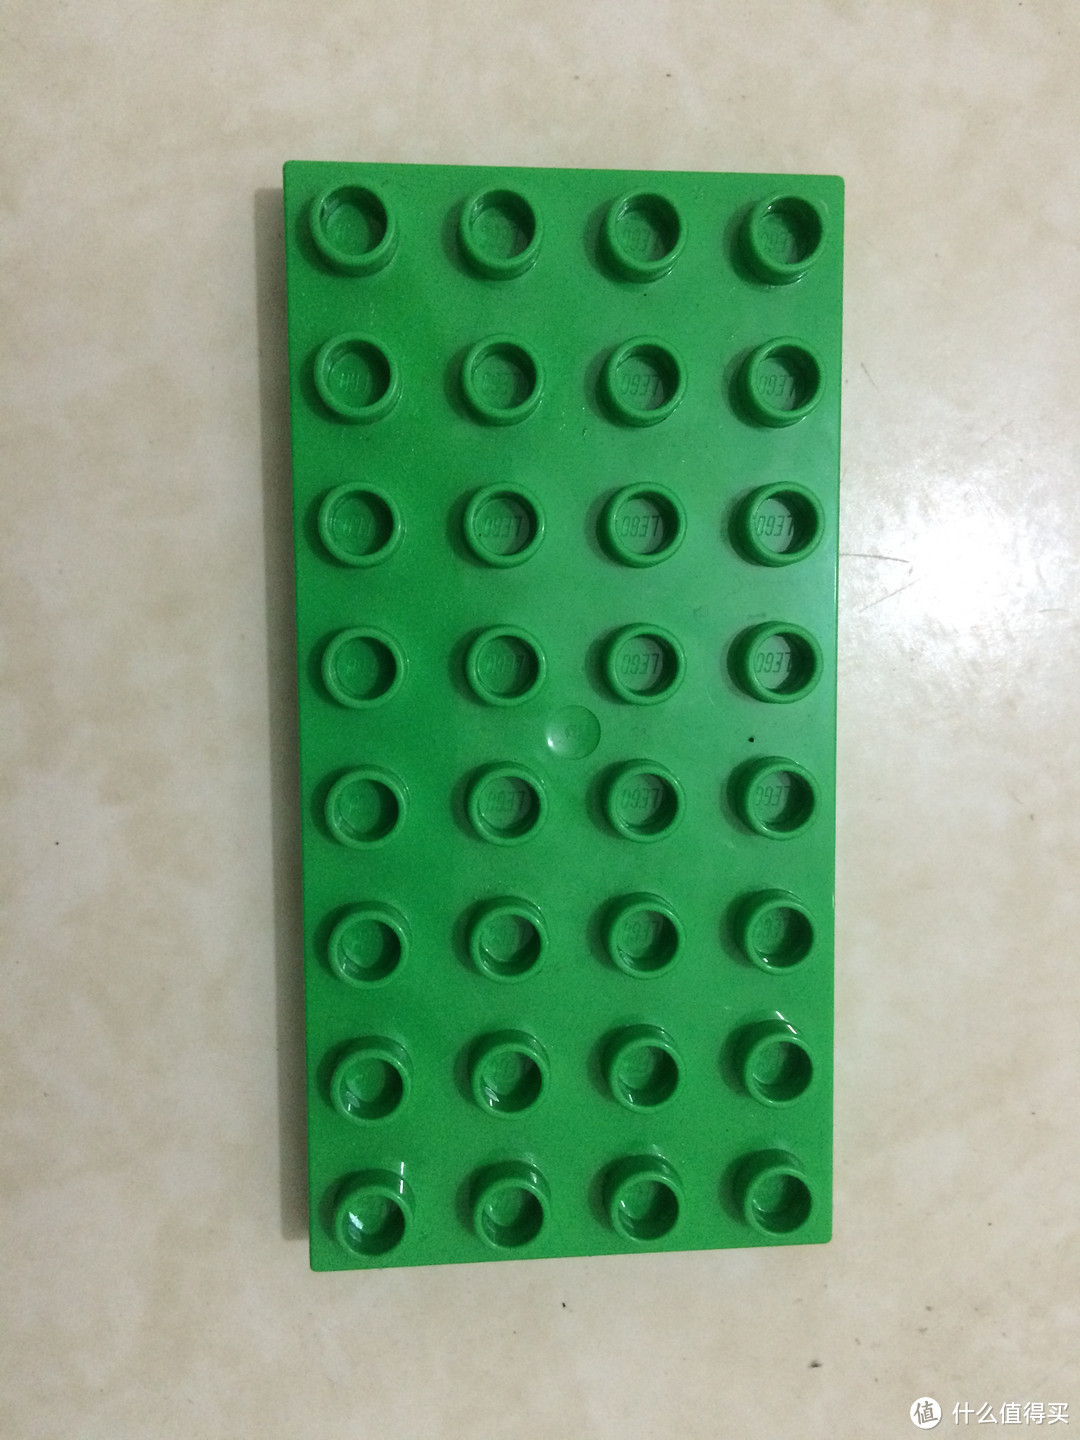 乐高人人爱：LEGO 乐高 得宝创意拼砌系列 多合一趣味桶 10572 & 农场小动物 10522